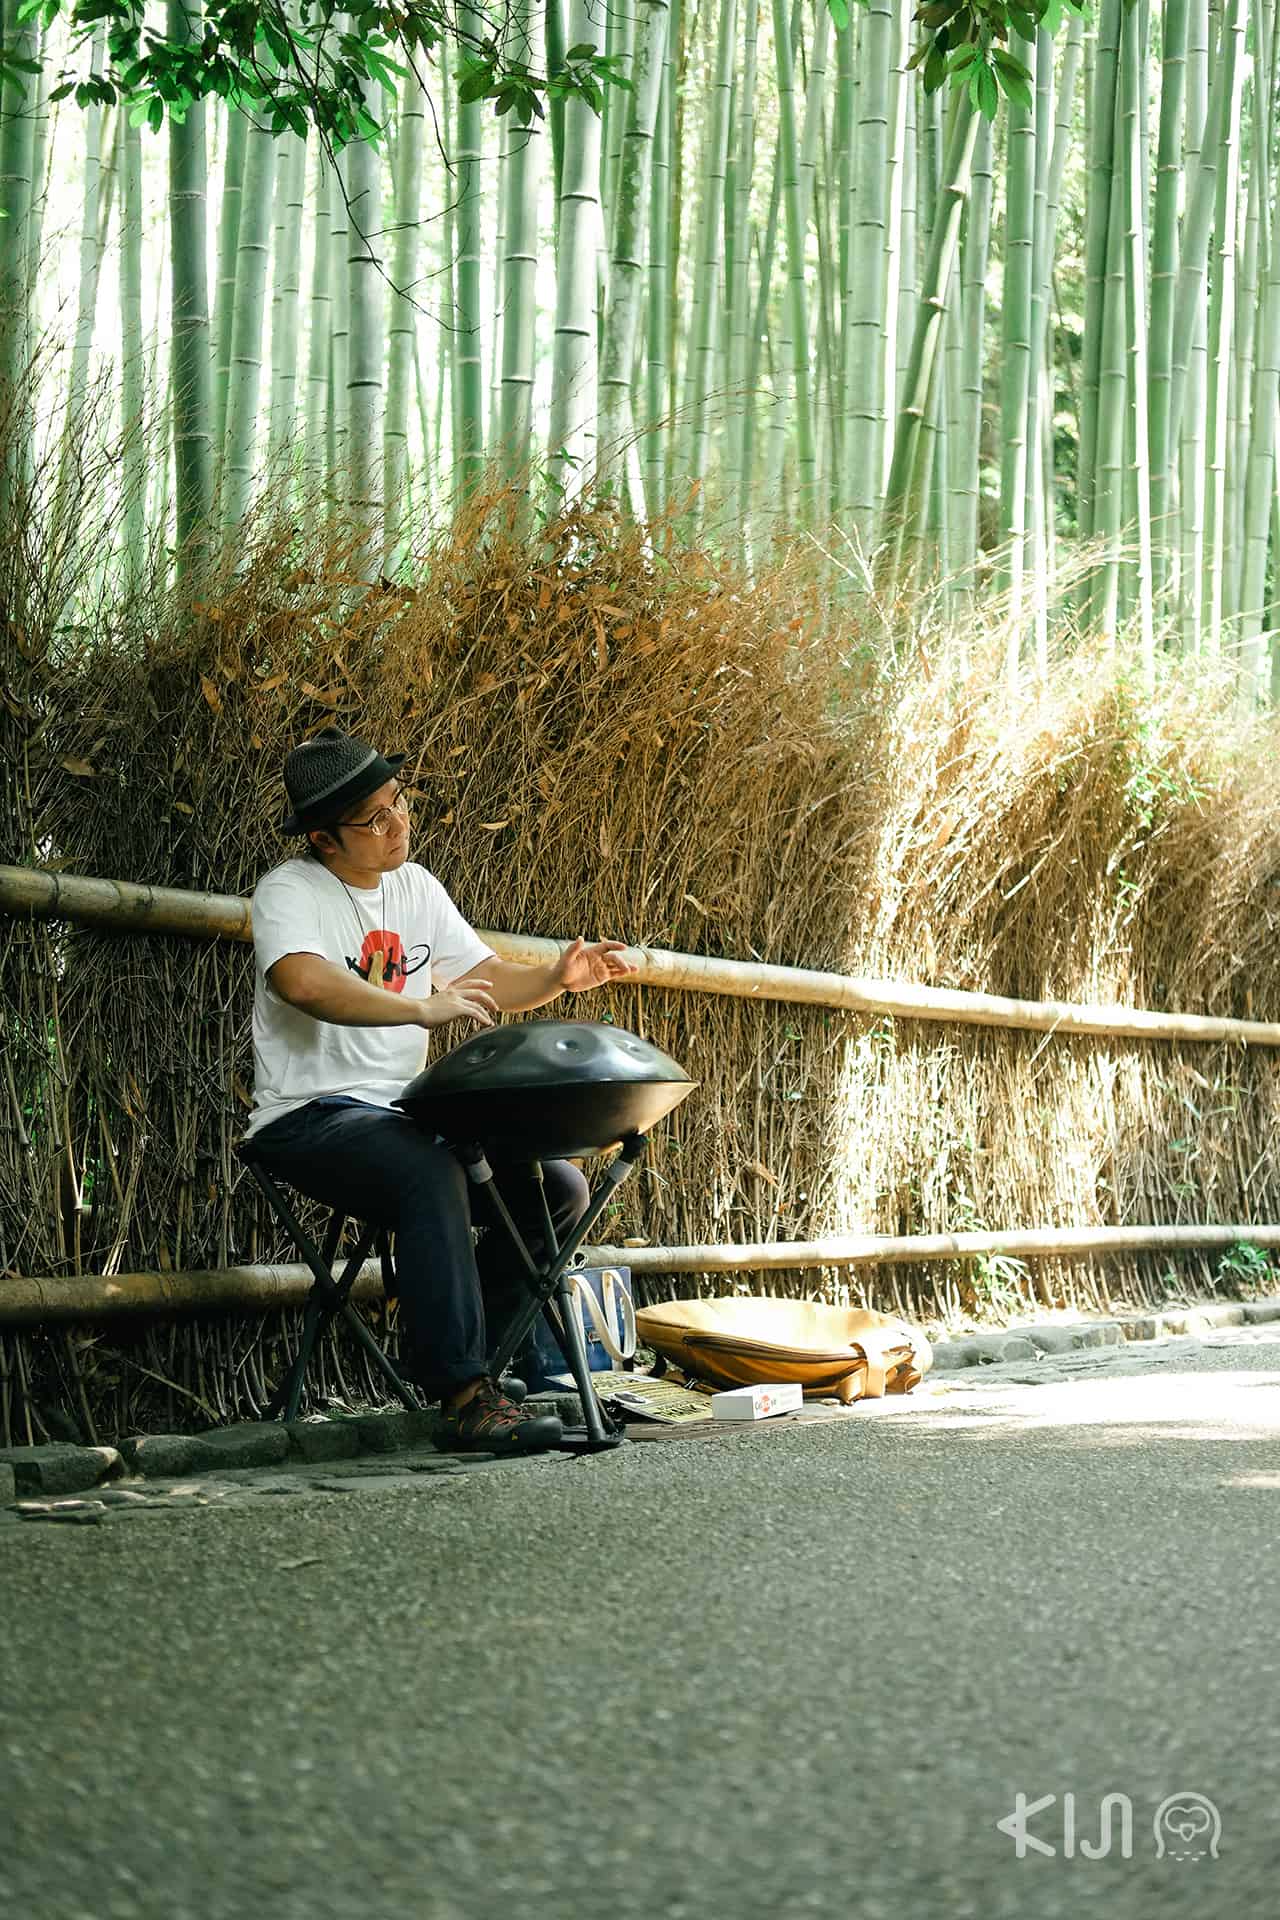 ป่าไผ่ (Bamboo Forest) ที่ย่านอาราชิยาม่า (Arashiyama) ในเกียวโต